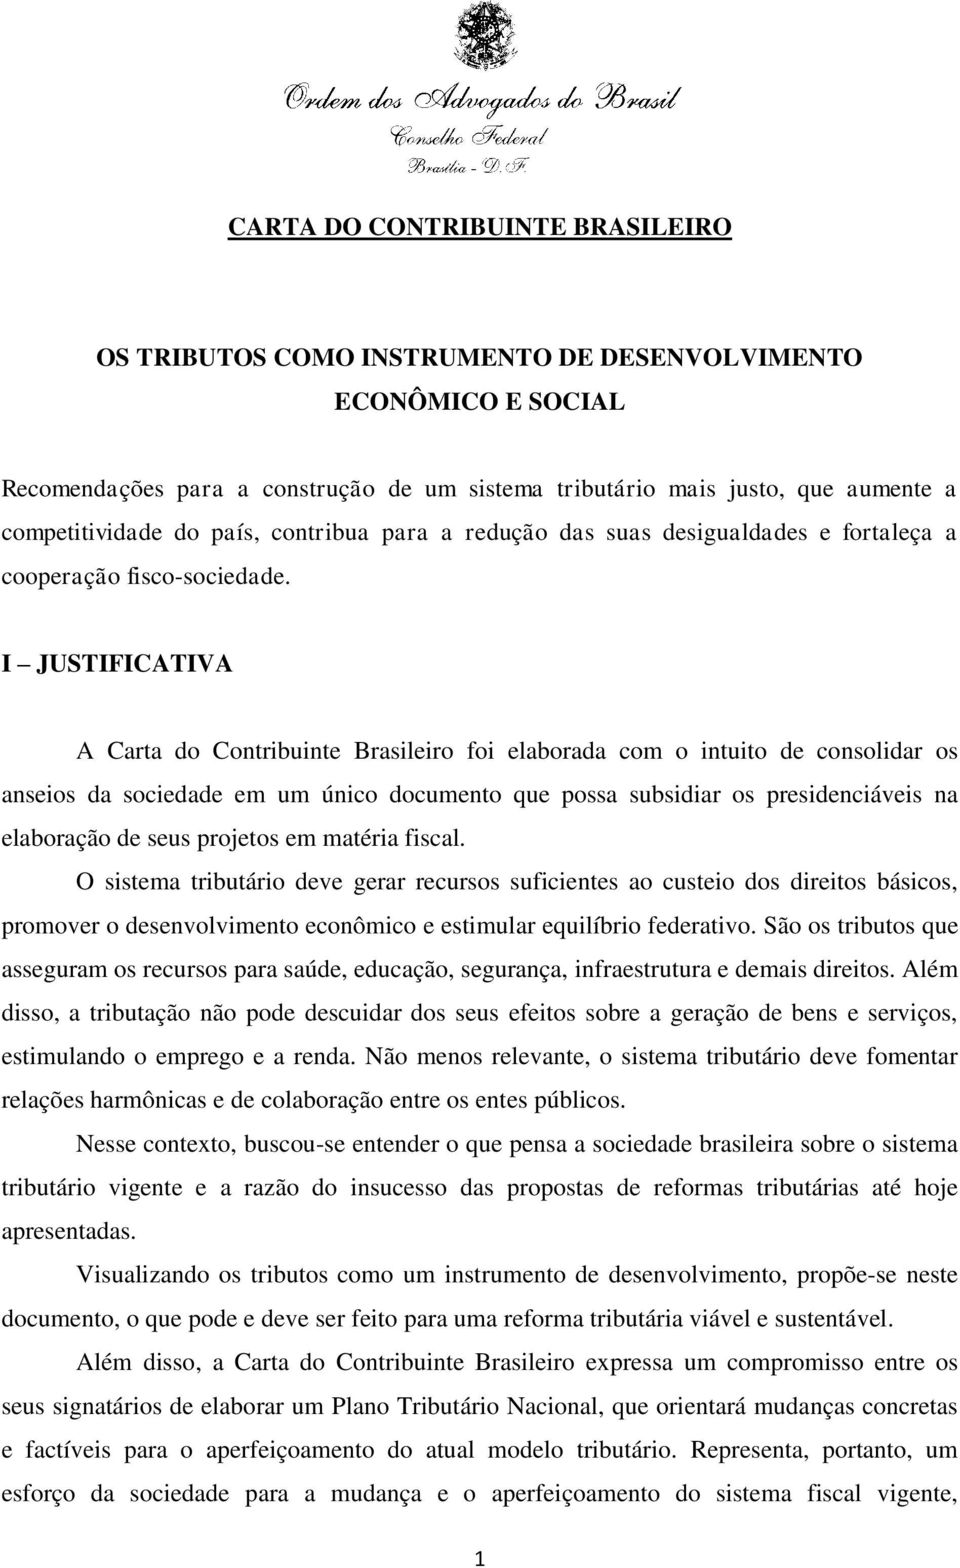 I JUSTIFICATIVA A Carta do Contribuinte Brasileiro foi elaborada com o intuito de consolidar os anseios da sociedade em um único documento que possa subsidiar os presidenciáveis na elaboração de seus